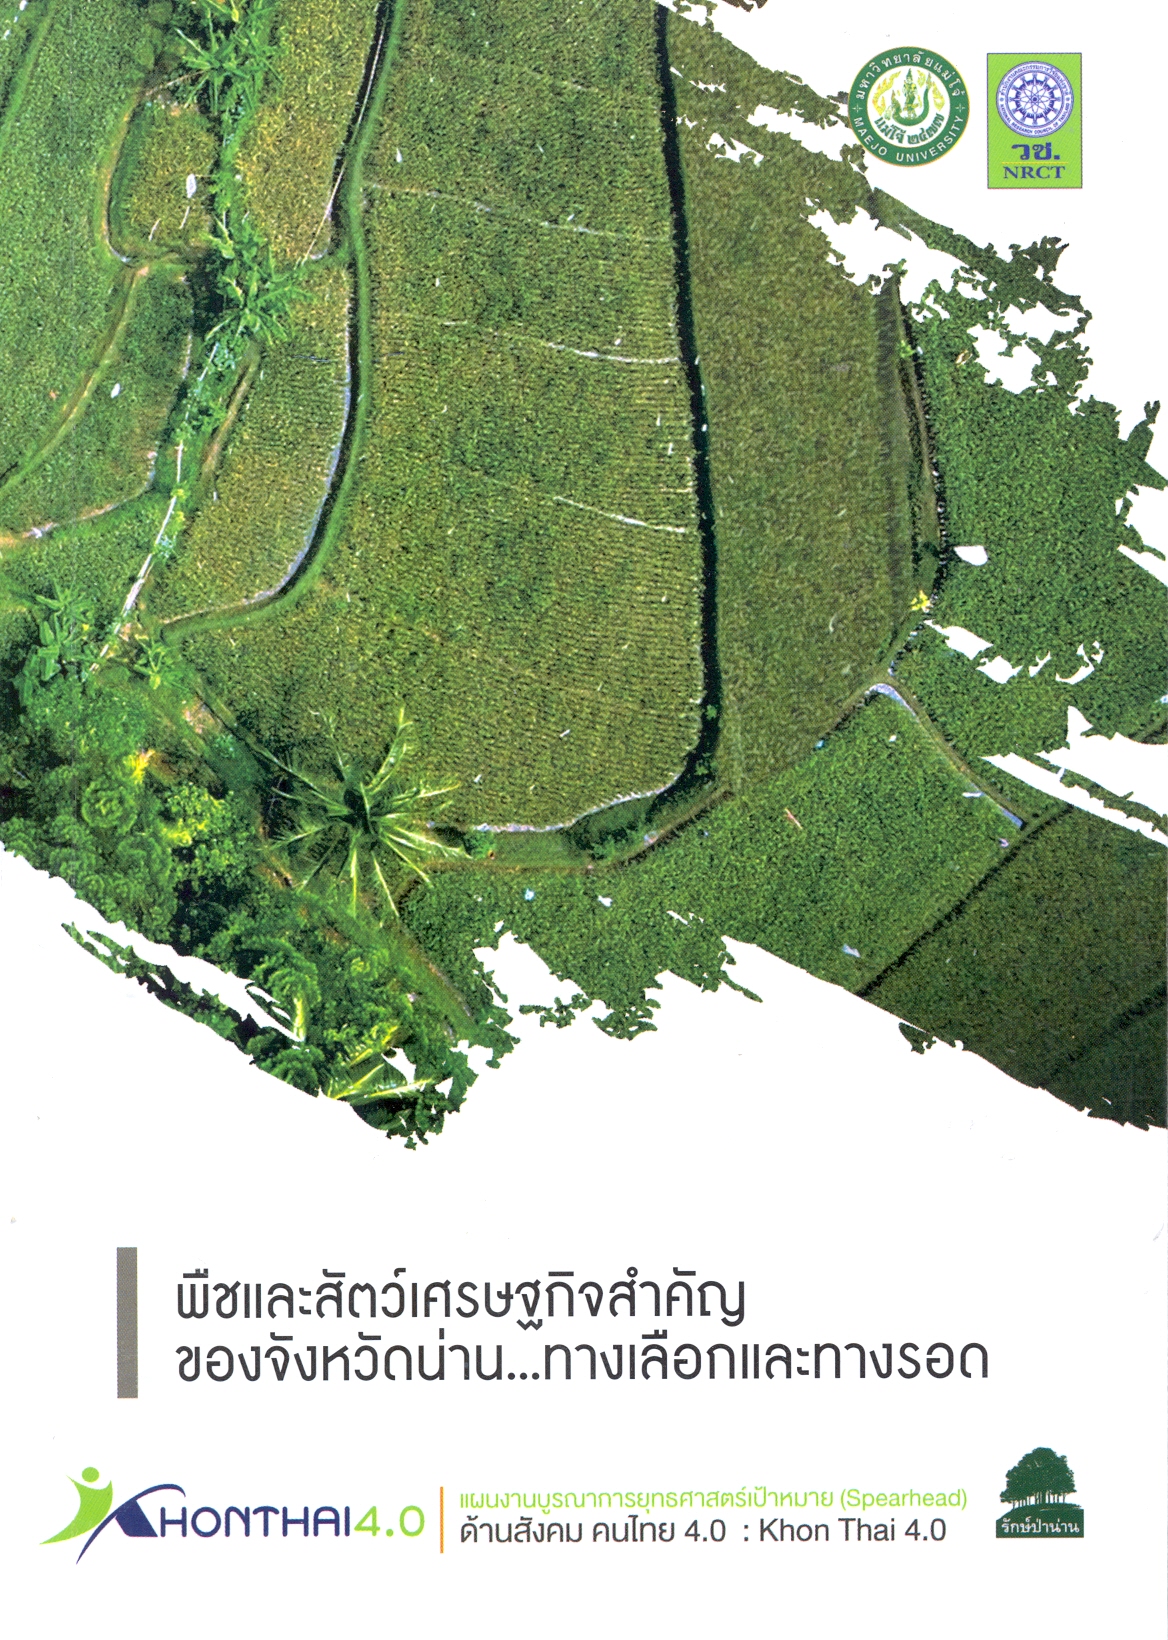 พืชและสัตว์เศรษฐกิจสำคัญของจังหวัดน่าน--ทางเลือกและทางรอด ภายใต้โครงการโมเดลทางเลือกในการพัฒนาคนไทย 4.0บนพื้นที่สูงในภาคเหนือตอนบน 